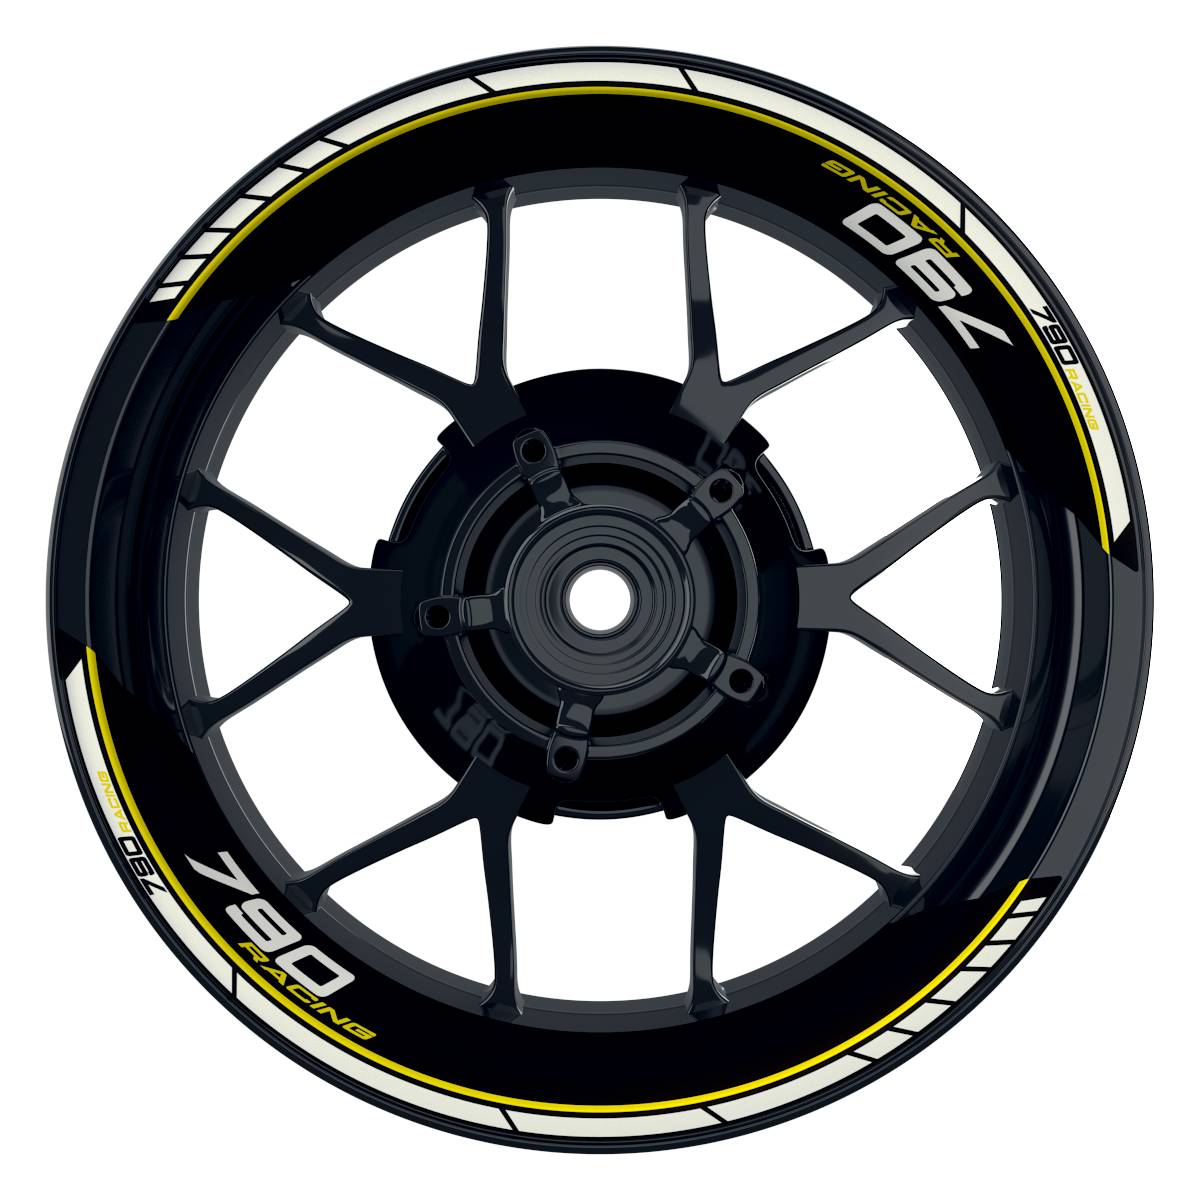 KTM Racing 790 Clean schwarz gelb Frontansicht